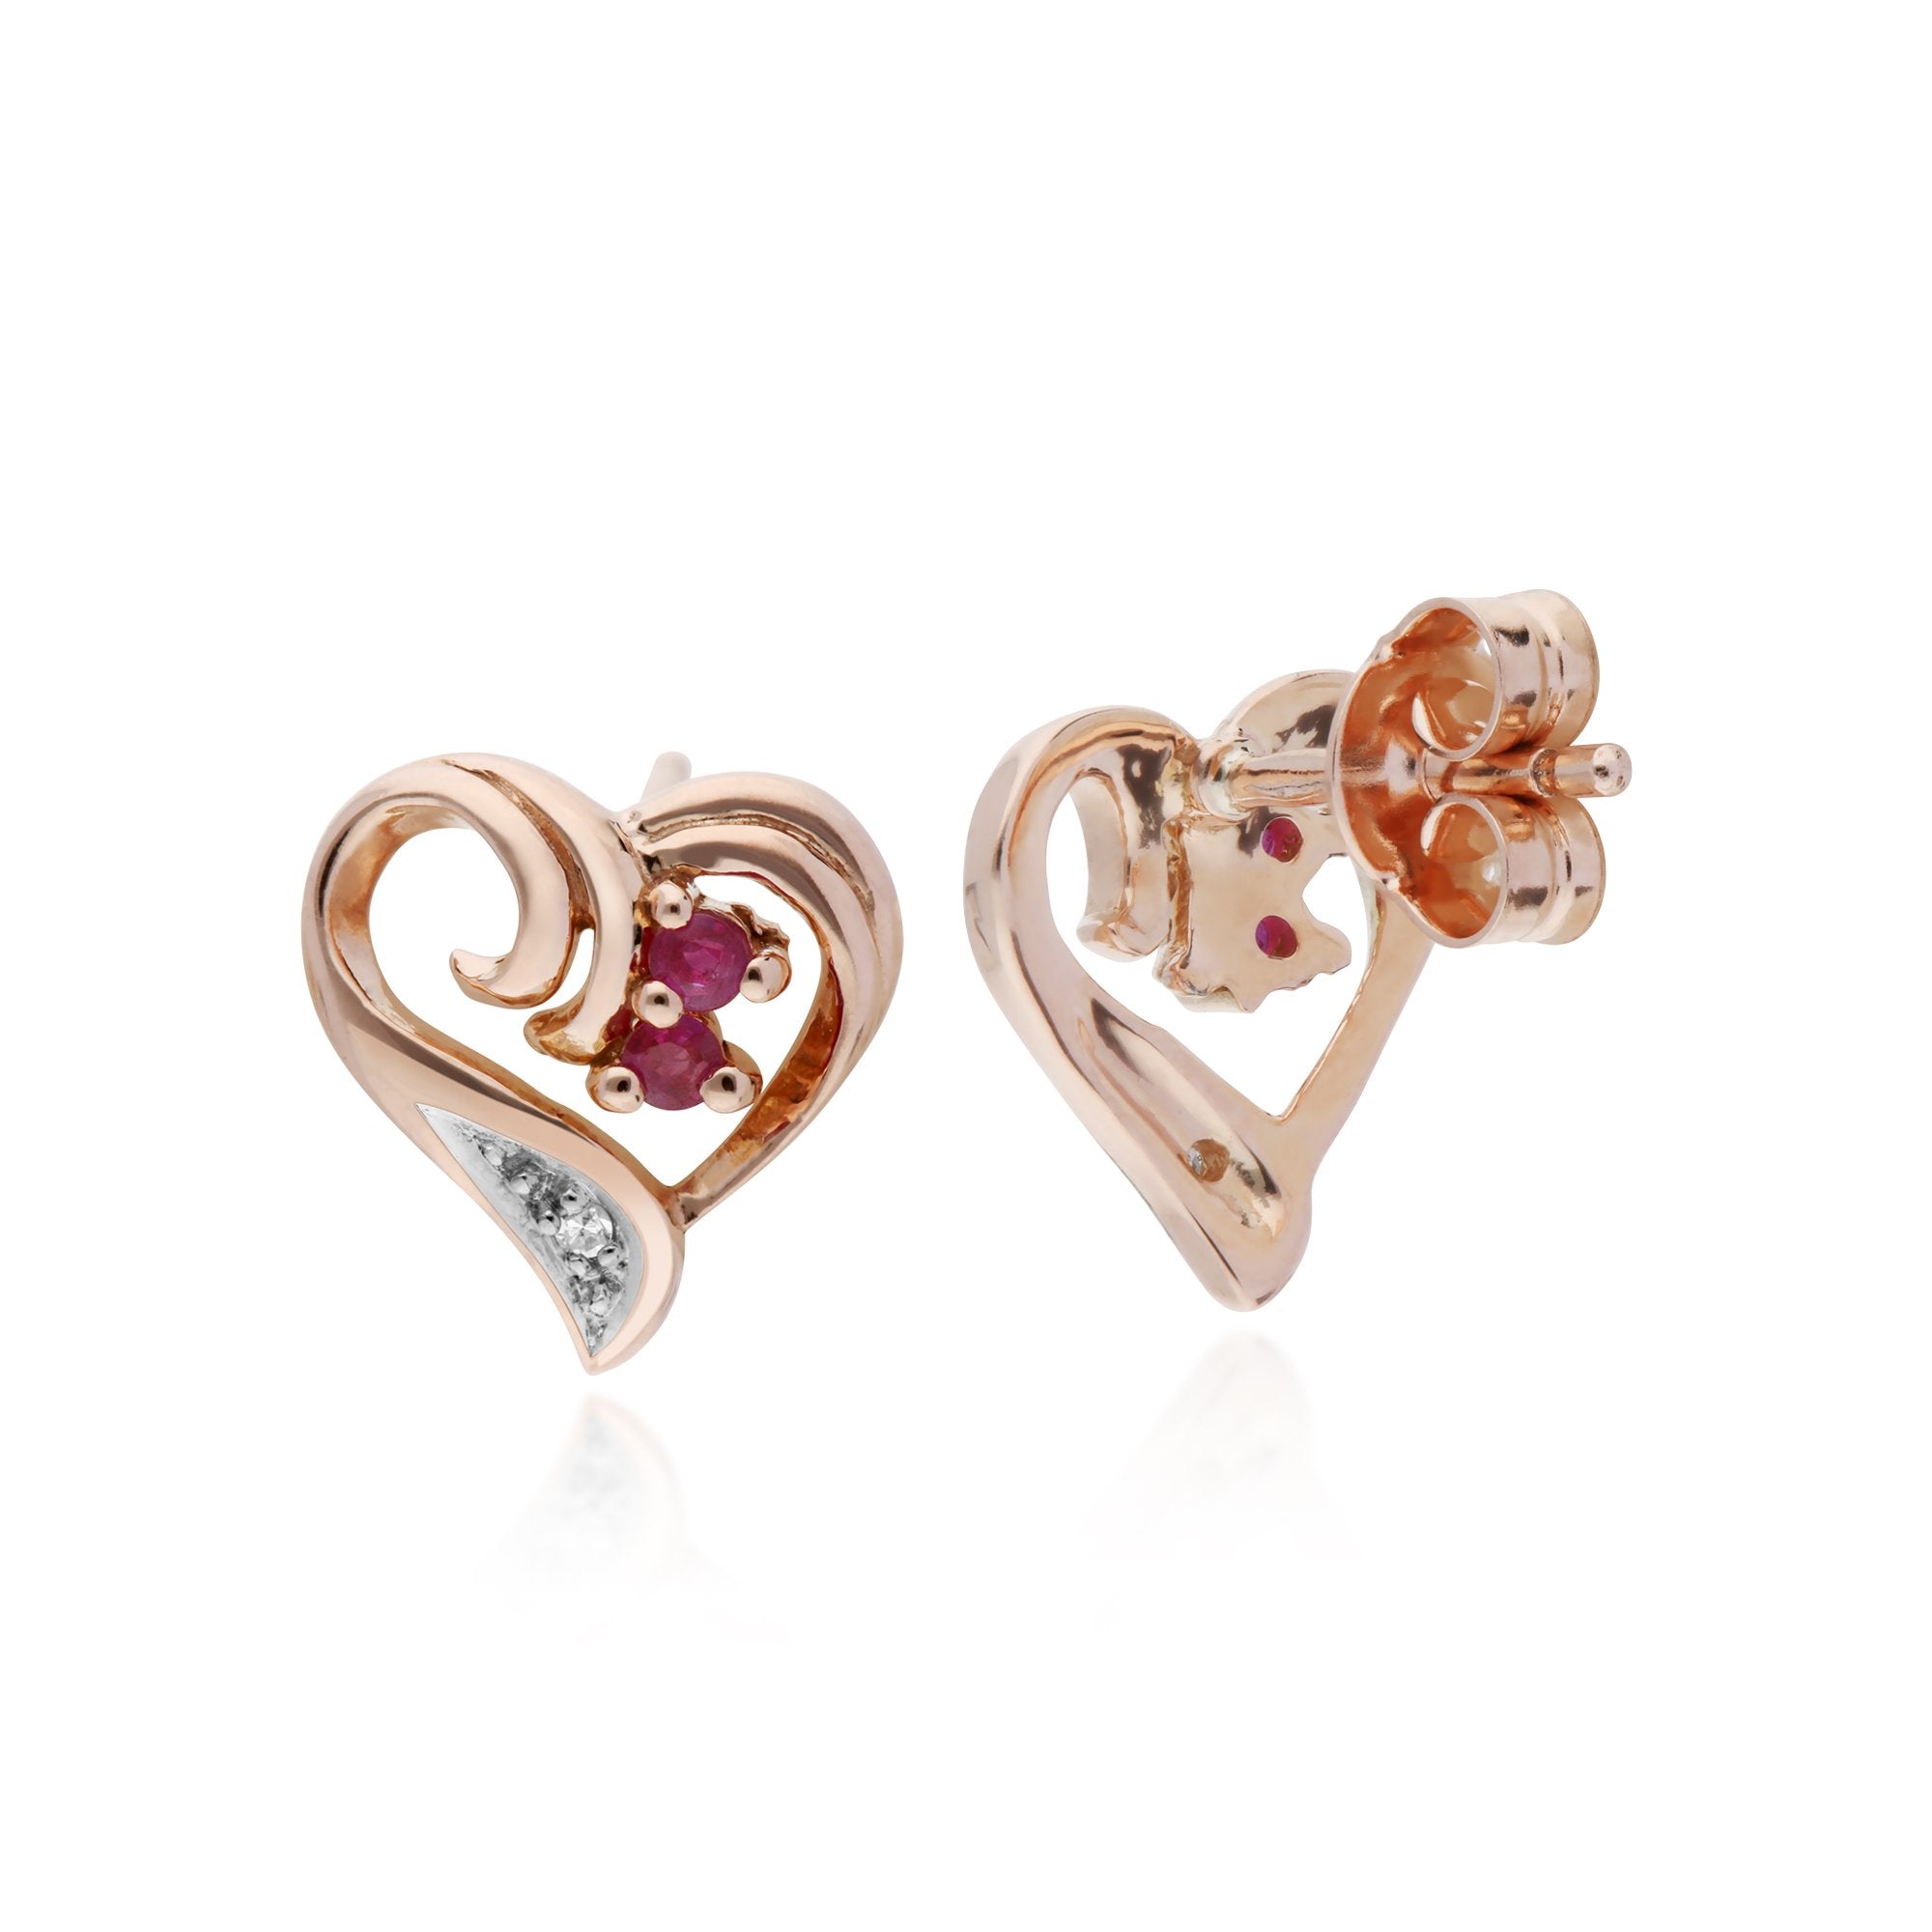 Classic Round Ruby & Diamond Fancy Swirl Heart Stud Earrings in 9ct Rose Gold